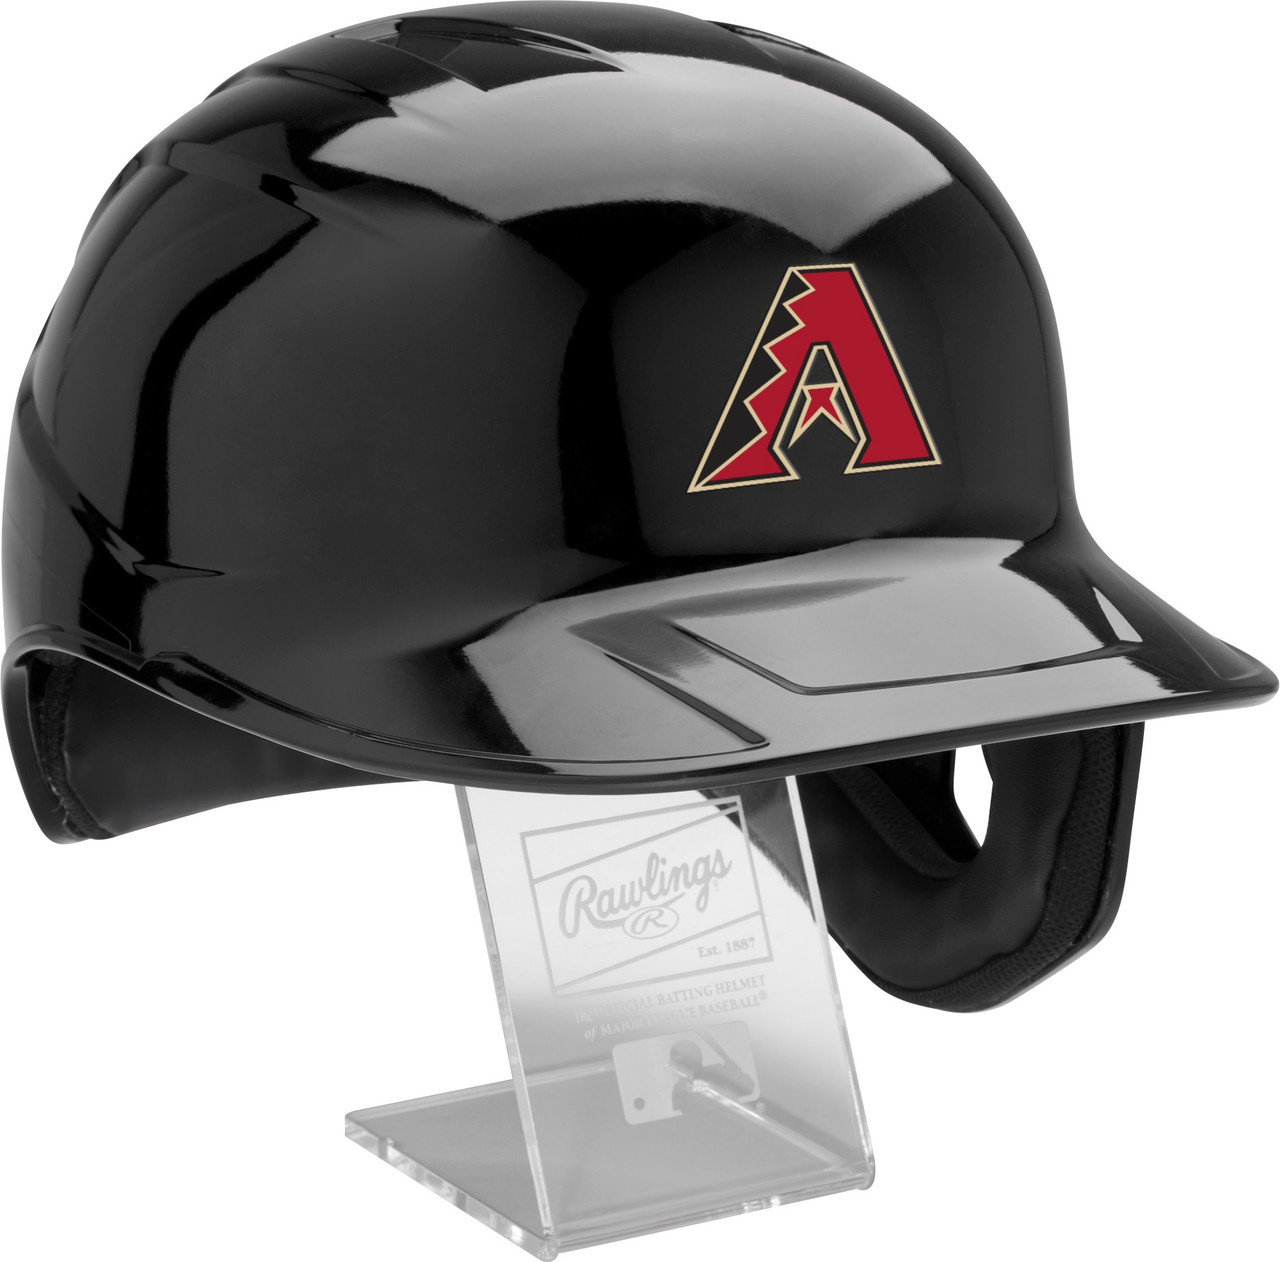 Arizona Diamondbacks MLB Youth Helmet and Jersey Sets